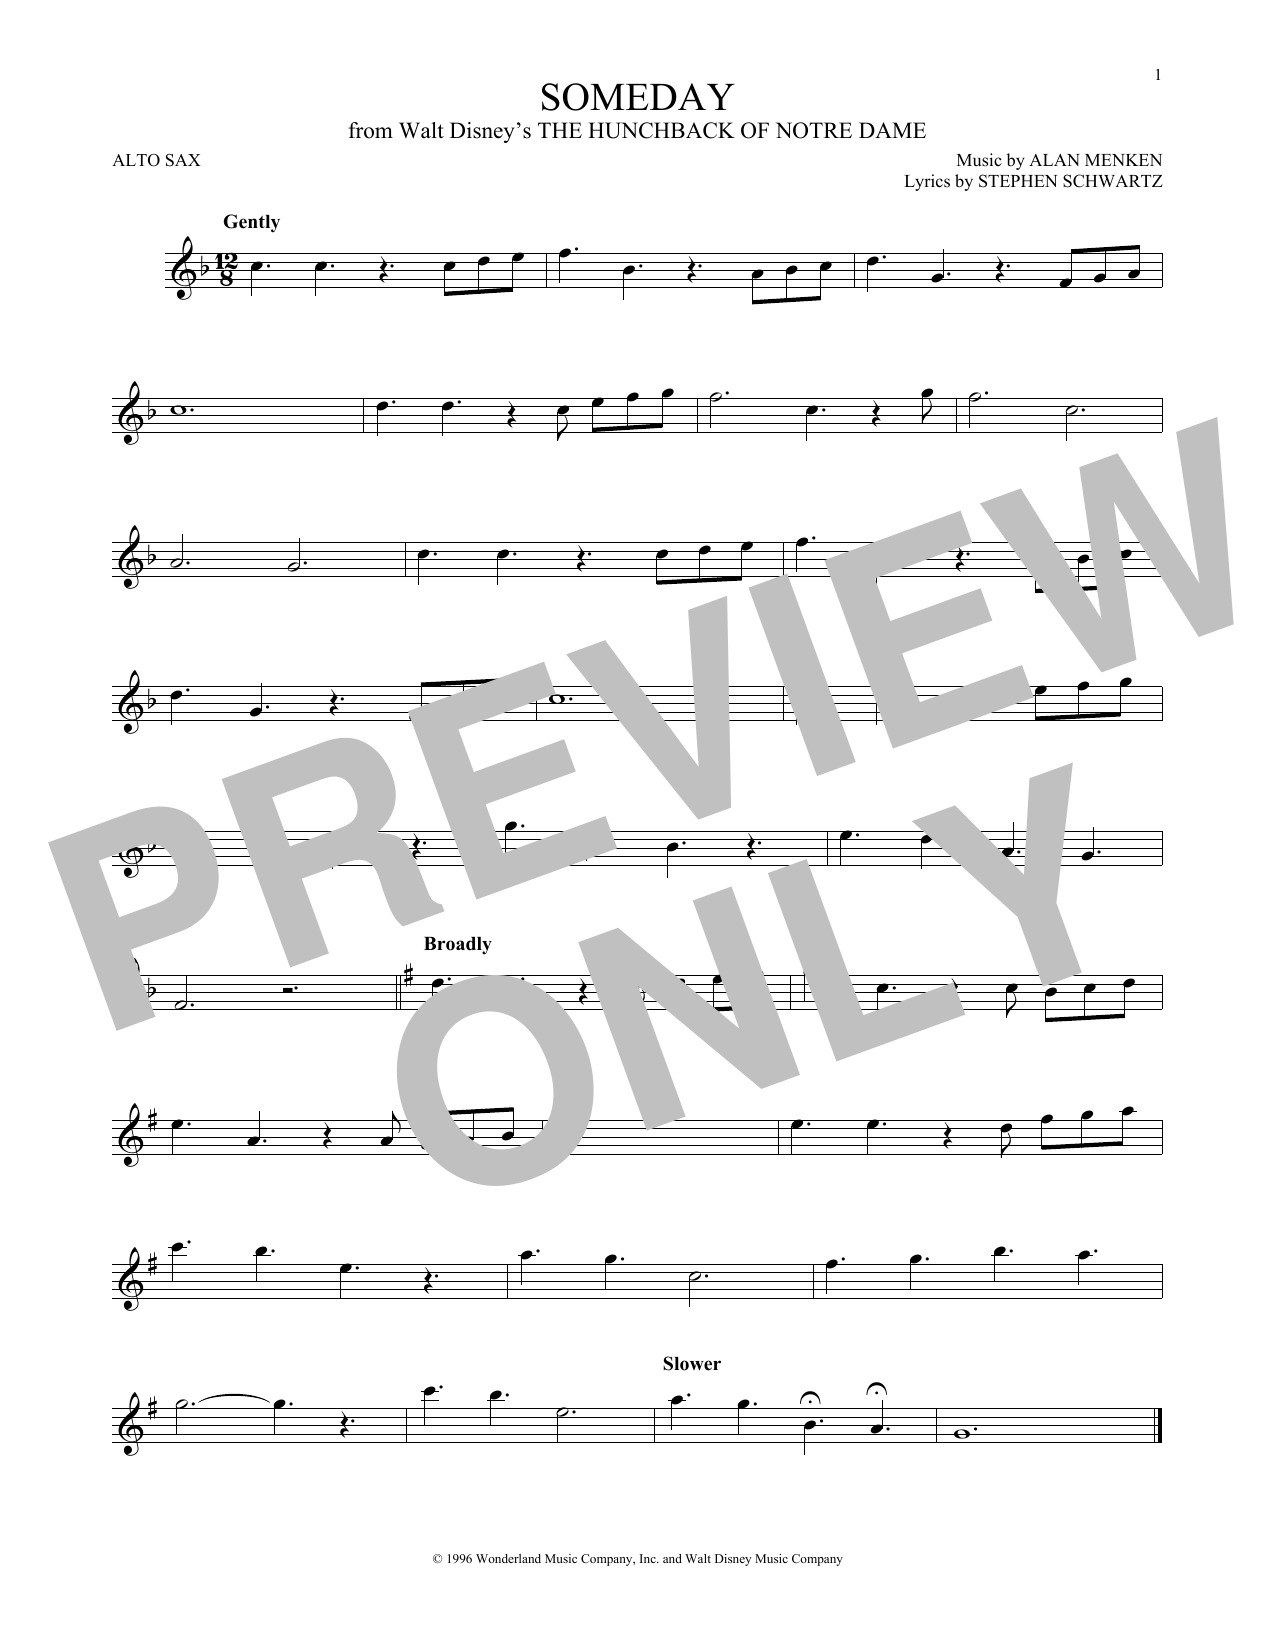 Alan Menken Someday (Esmeralda's Prayer) Sheet Music Notes & Chords for Alto Saxophone - Download or Print PDF